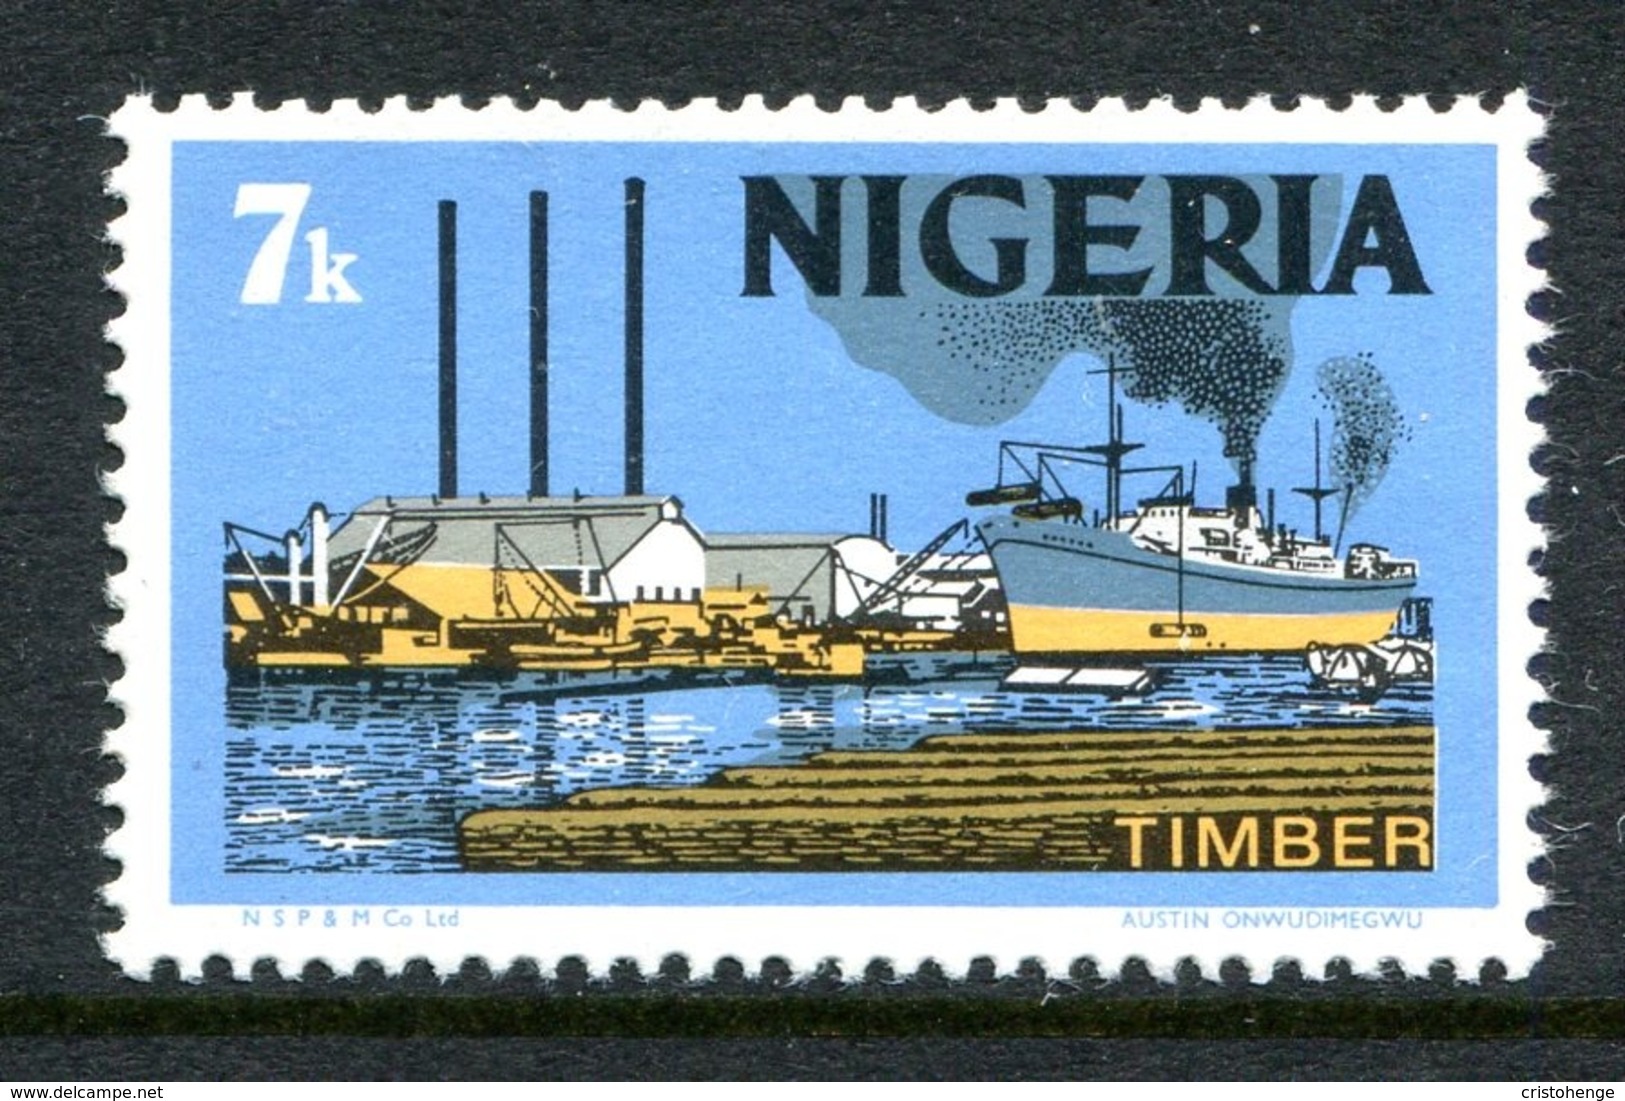 Nigeria 1973-74 Pictorials - Litho. - 7k Timber MNH (SG 294) - Nigeria (1961-...)